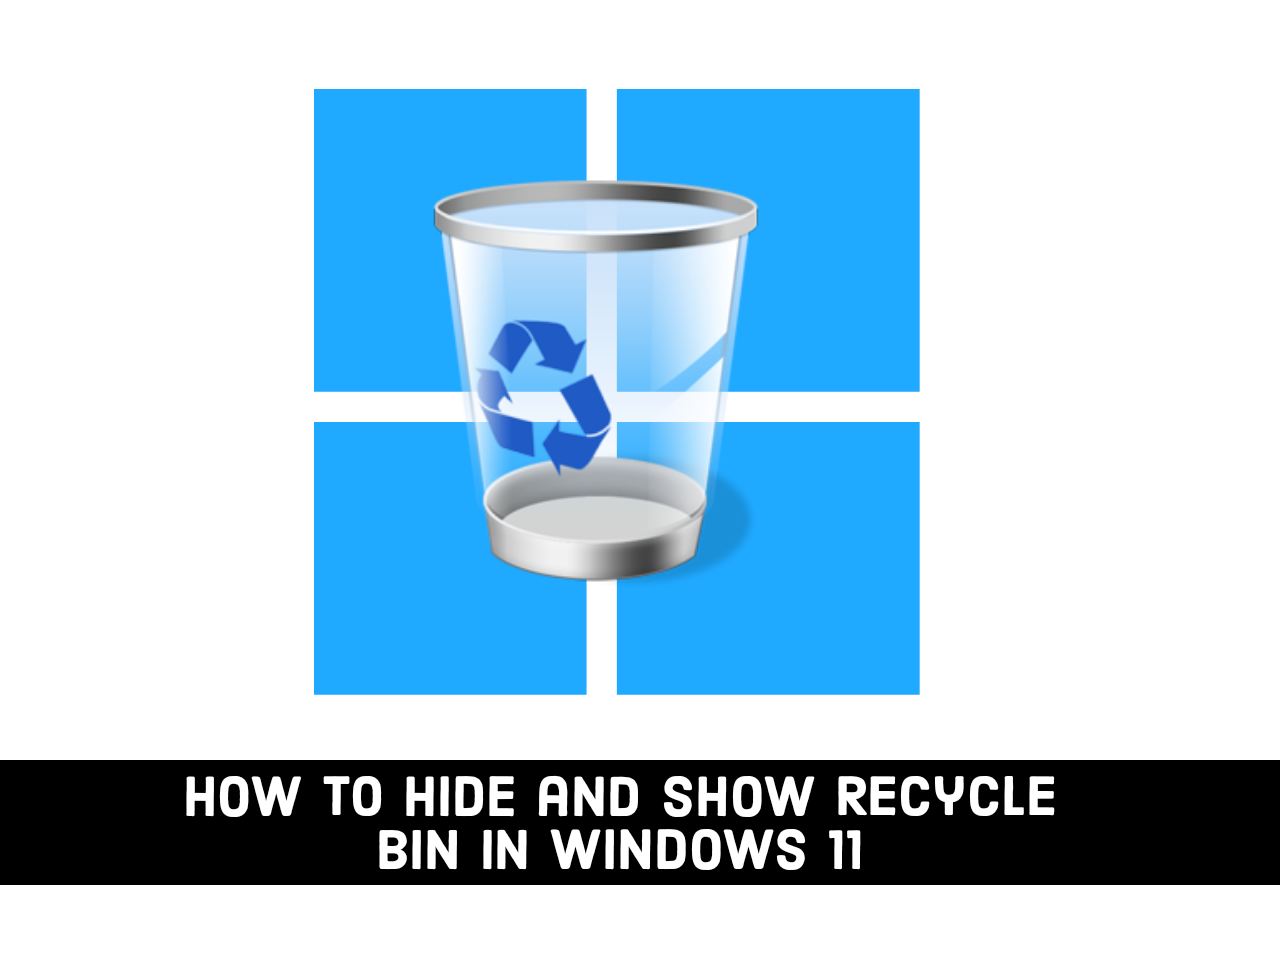 Windows 11 Recycle Bin Empty